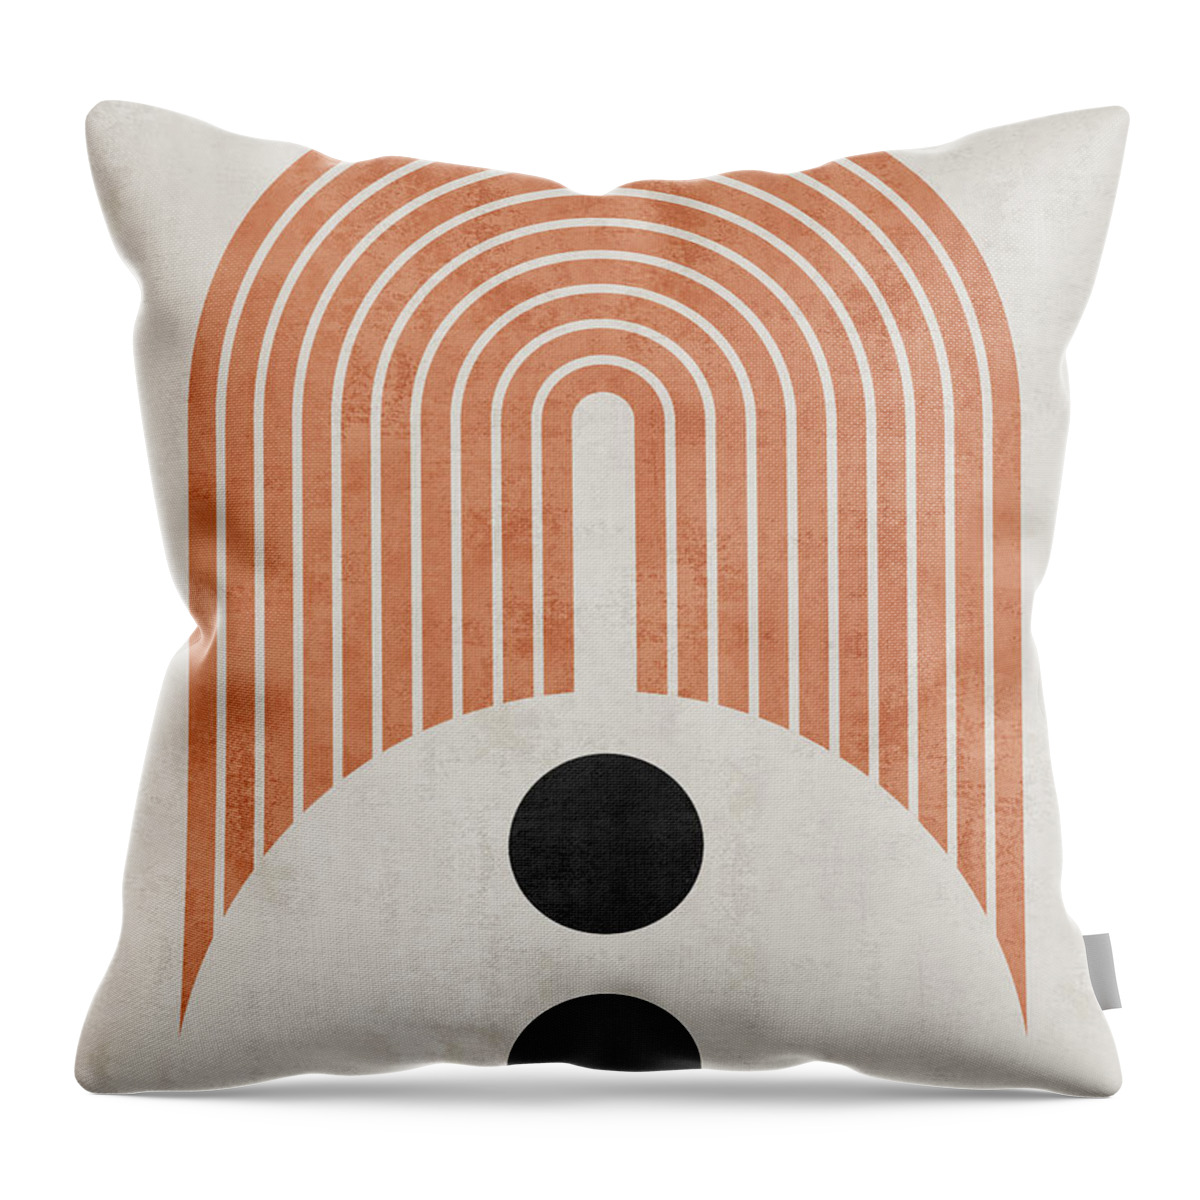 Minimal Throw Pillow featuring the digital art Opportunity - Minimal, Abstract - Mid Century Modern Art by Studio Grafiikka